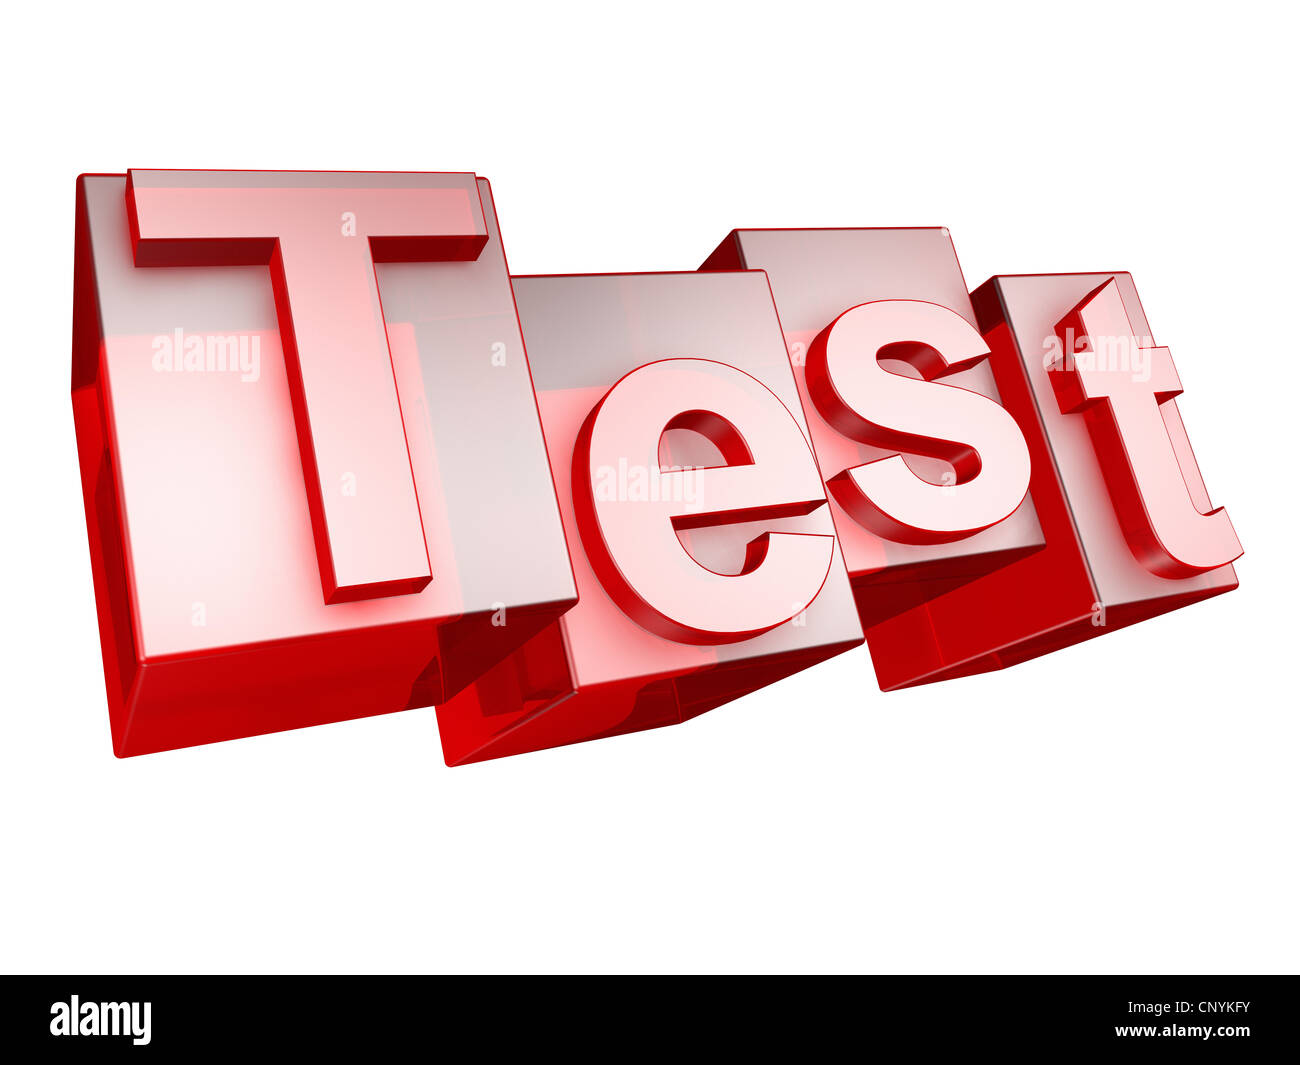 La parola Test in 3D lettere su sfondo bianco - das Wort TEST aus 3D Buchstaben gesetzt, freigestellt auf weißem Hintergrund Foto Stock